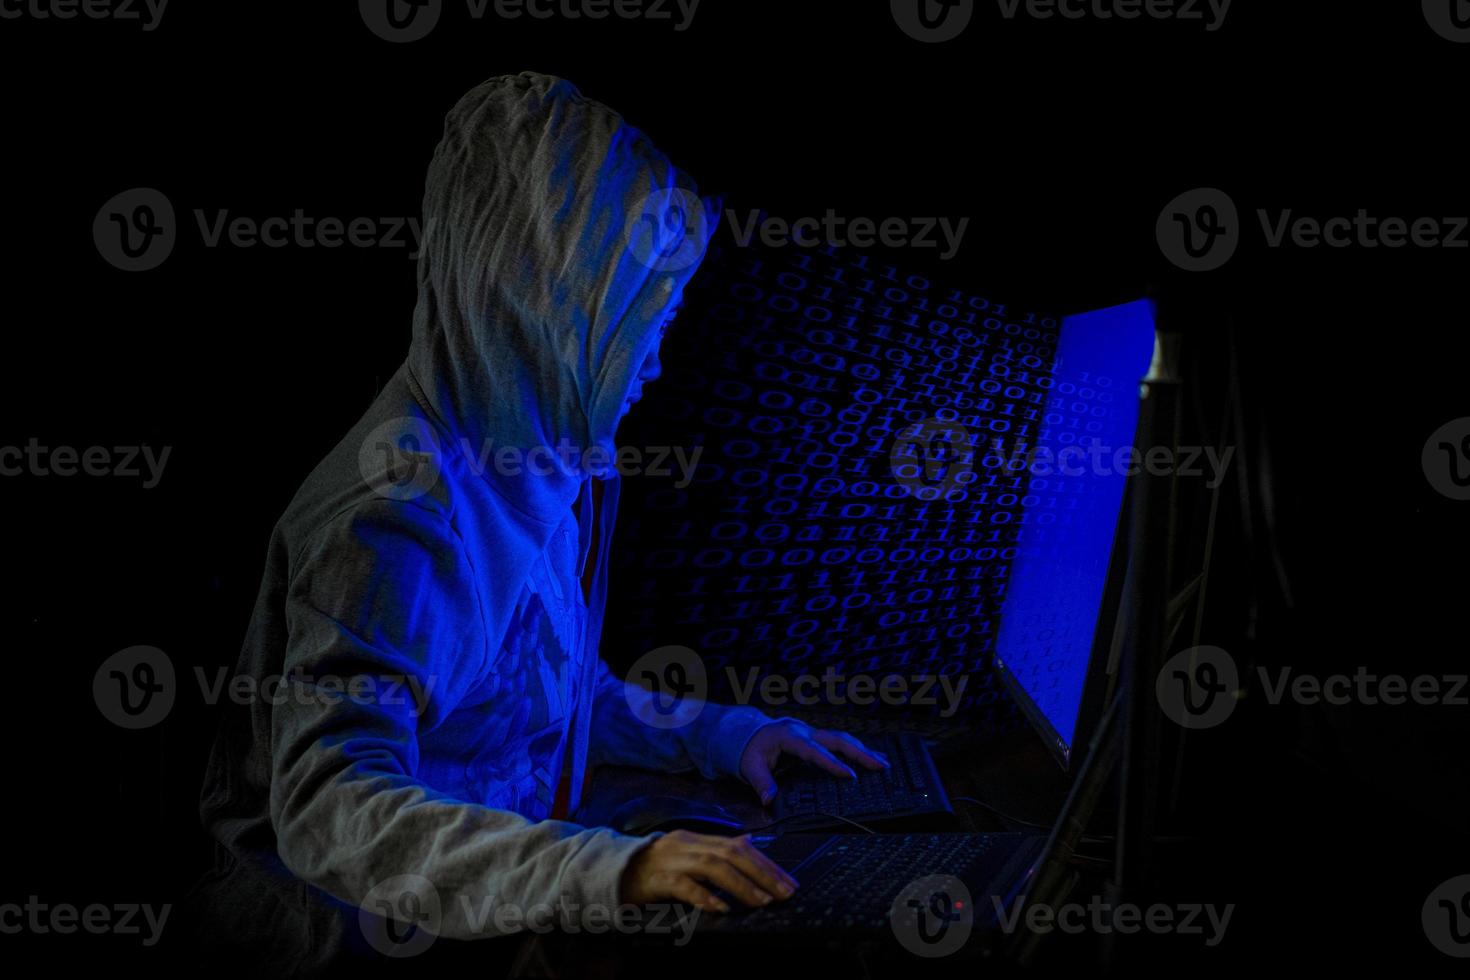 hacker de mujeres irrumpe en servidores de datos del gobierno foto